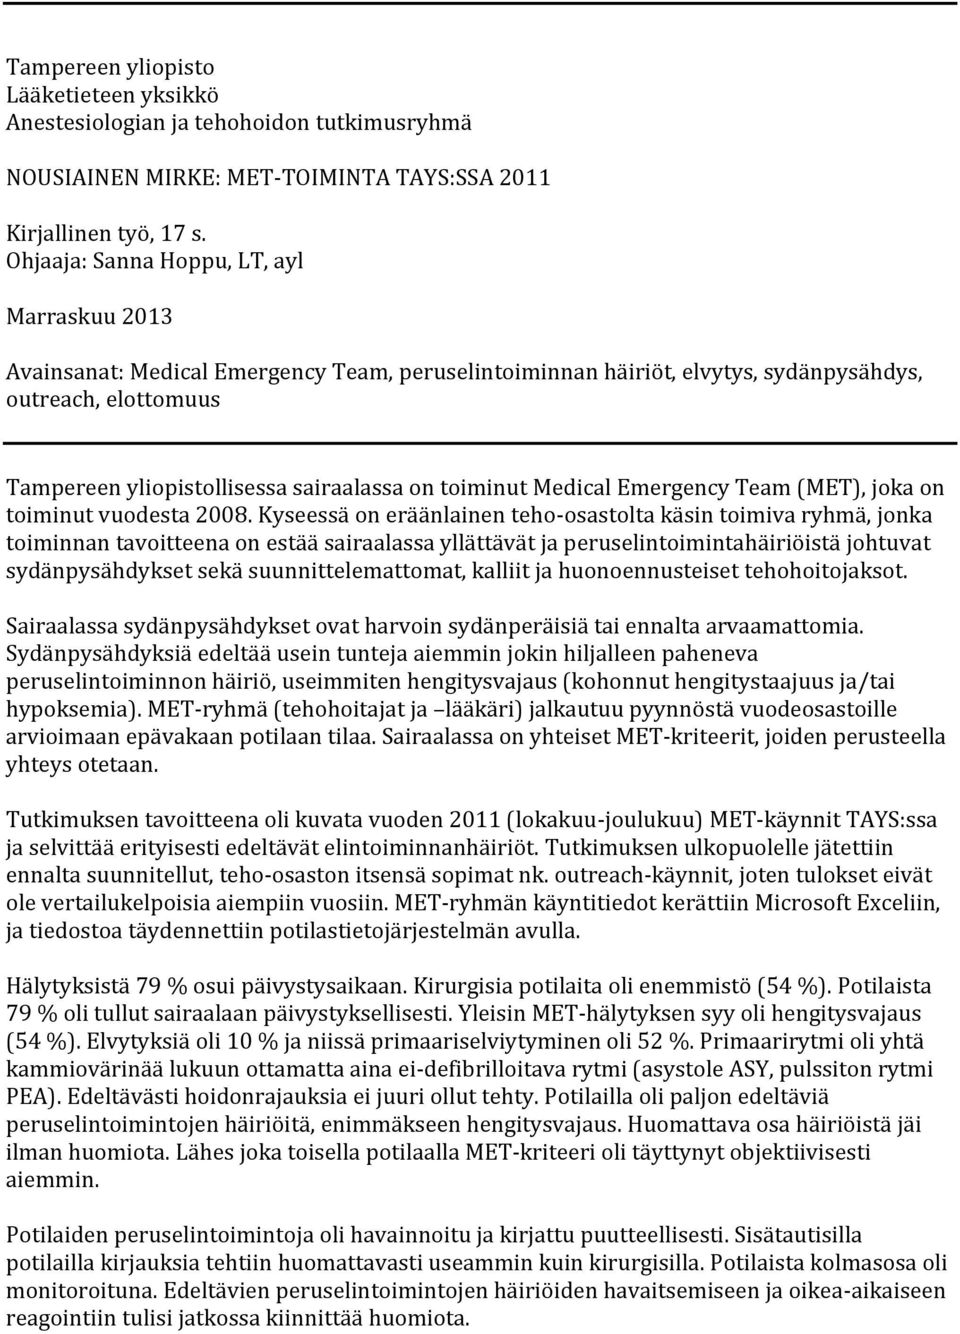 toiminut Medical Emergency Team (MET), joka on toiminut vuodesta 2008.